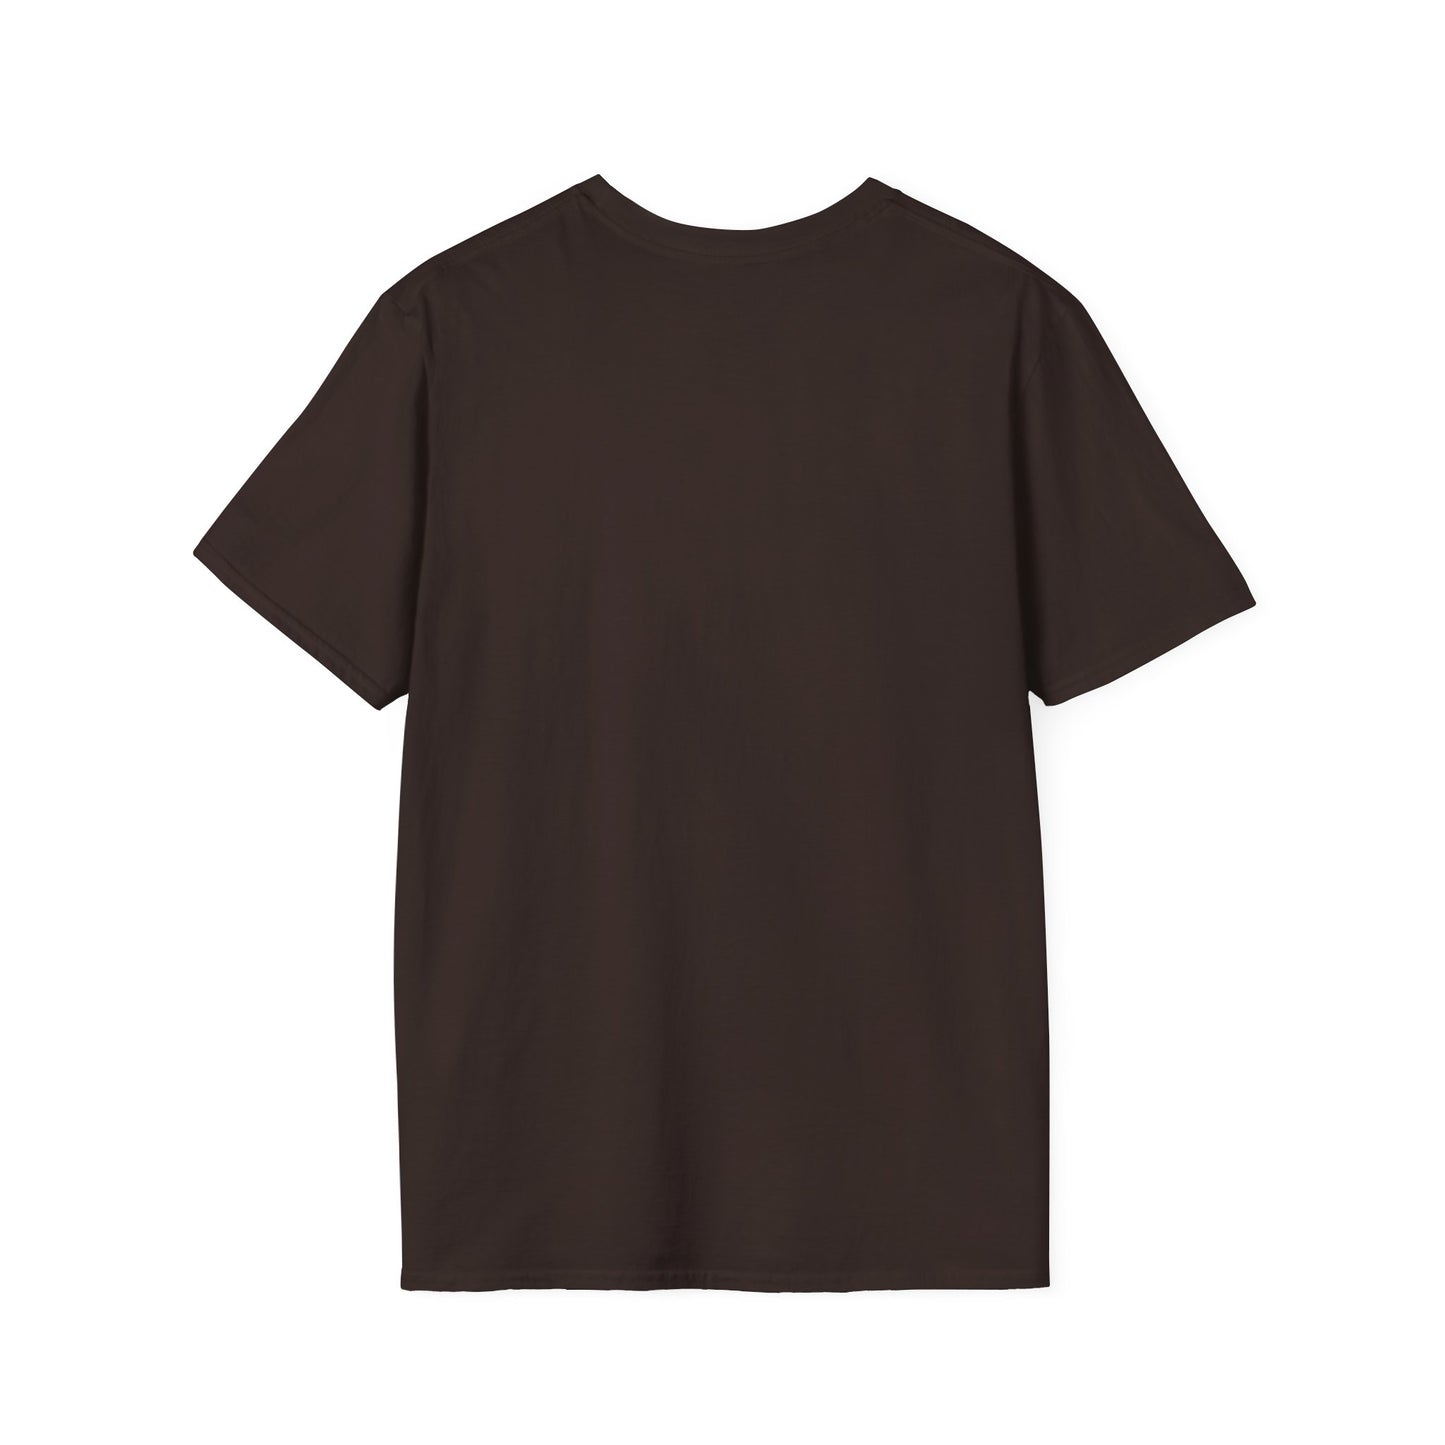 Rawr Unisex Softstyle T-Shirt